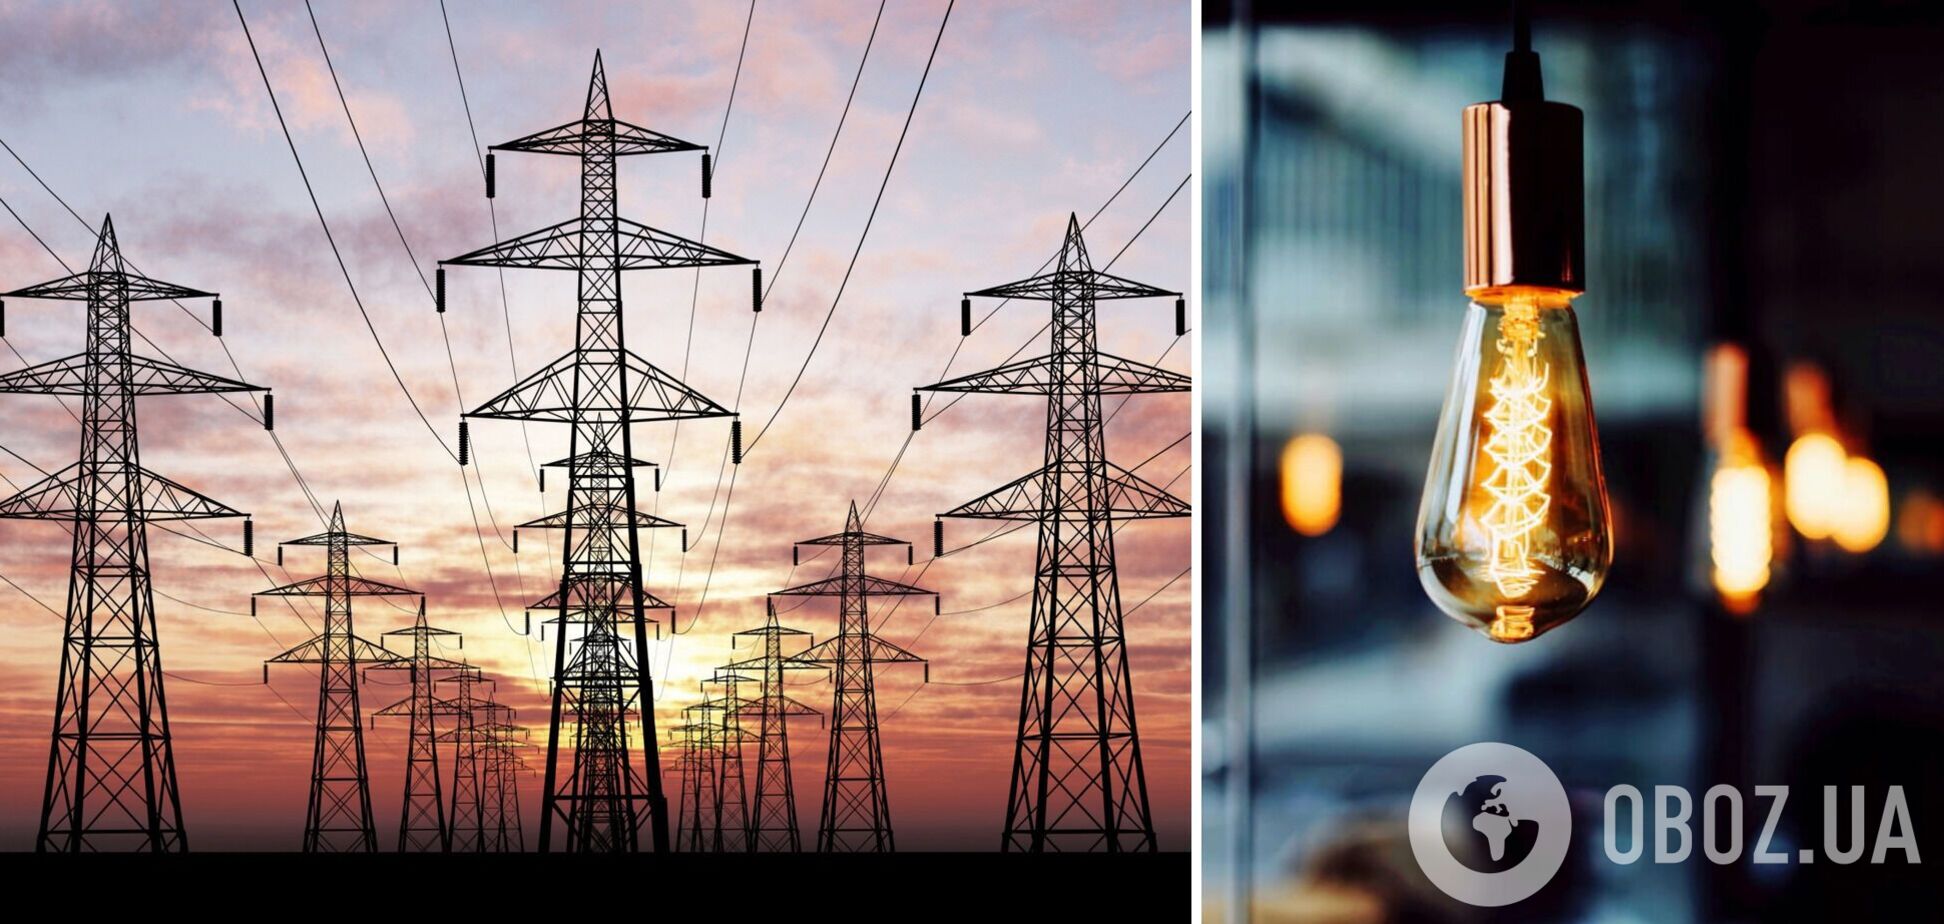 Экспорт тока может помочь сохранить льготные тарифы на электричество для населения, – Оржель